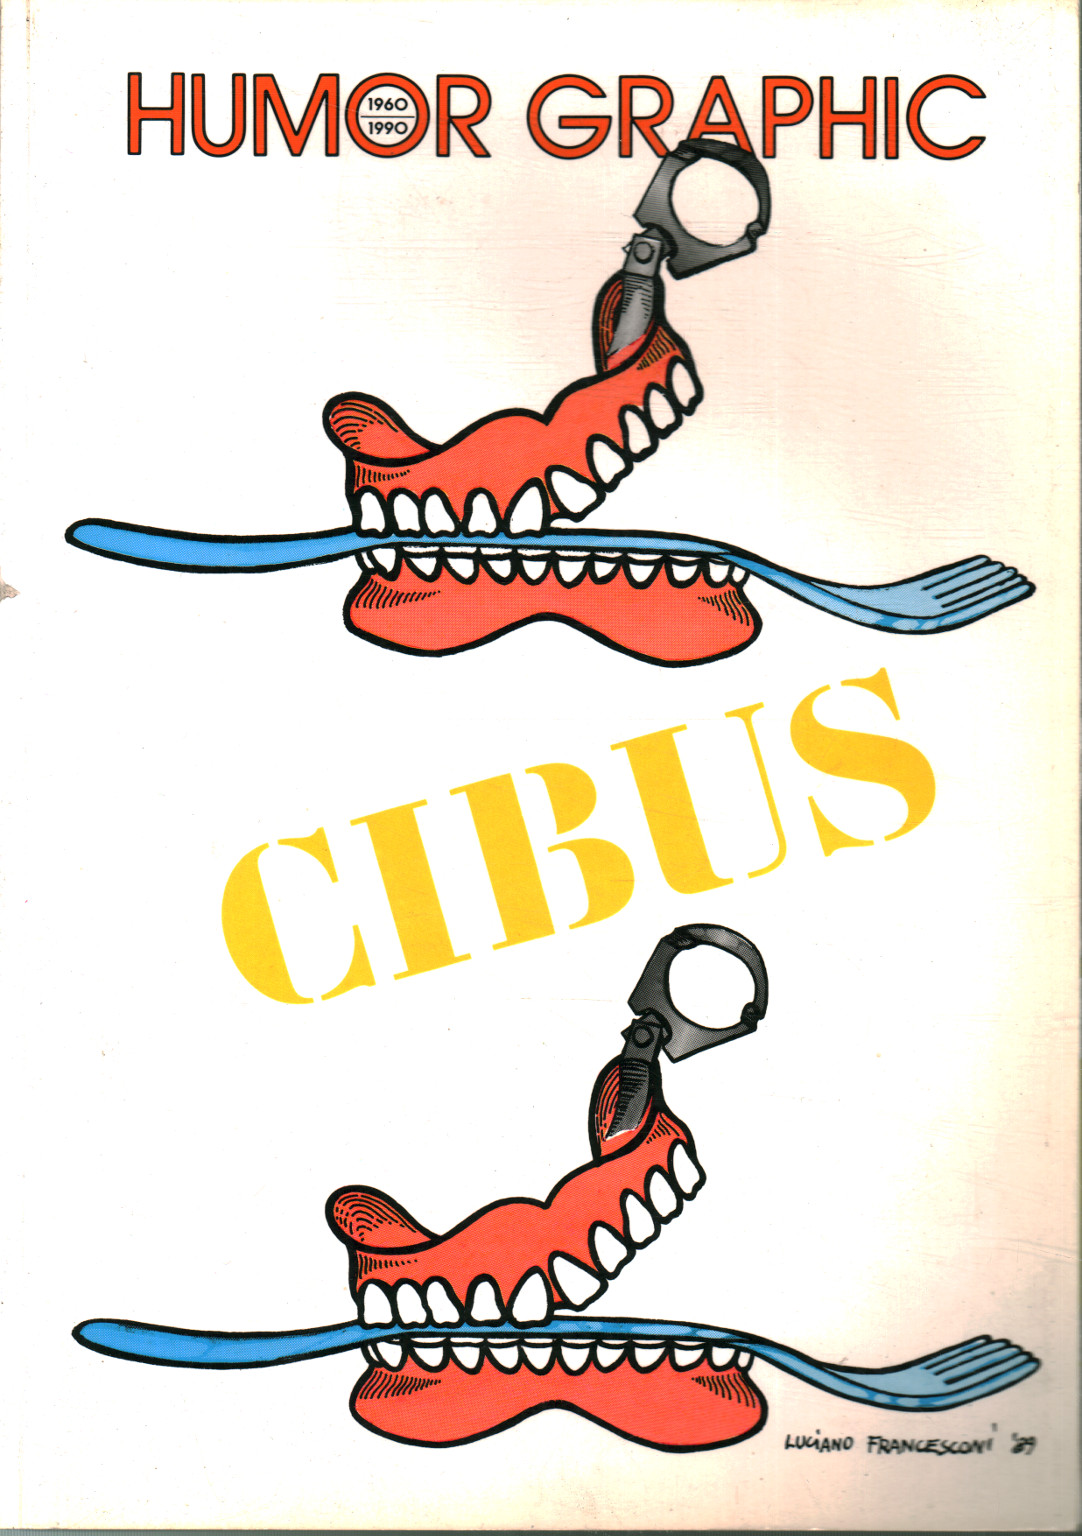 Humor Gráfico (1960-1990 n. 29) Cibus,Humor Gráfico (1960-1990 n.29) Cibus